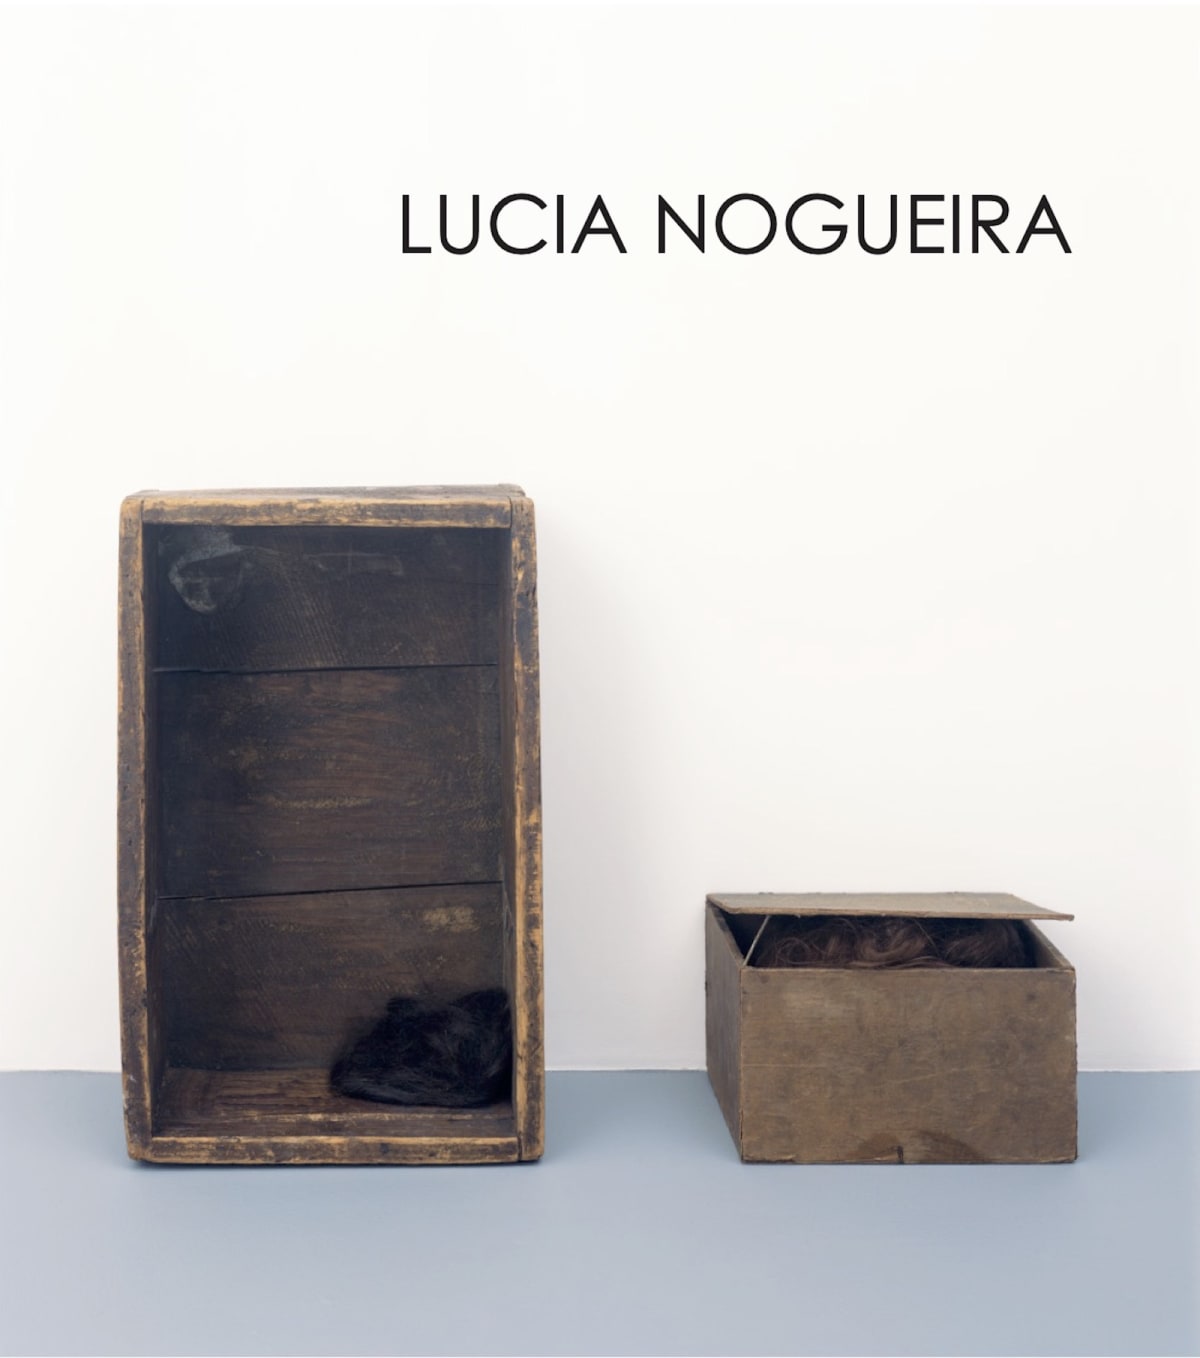 Lucia Nogueira